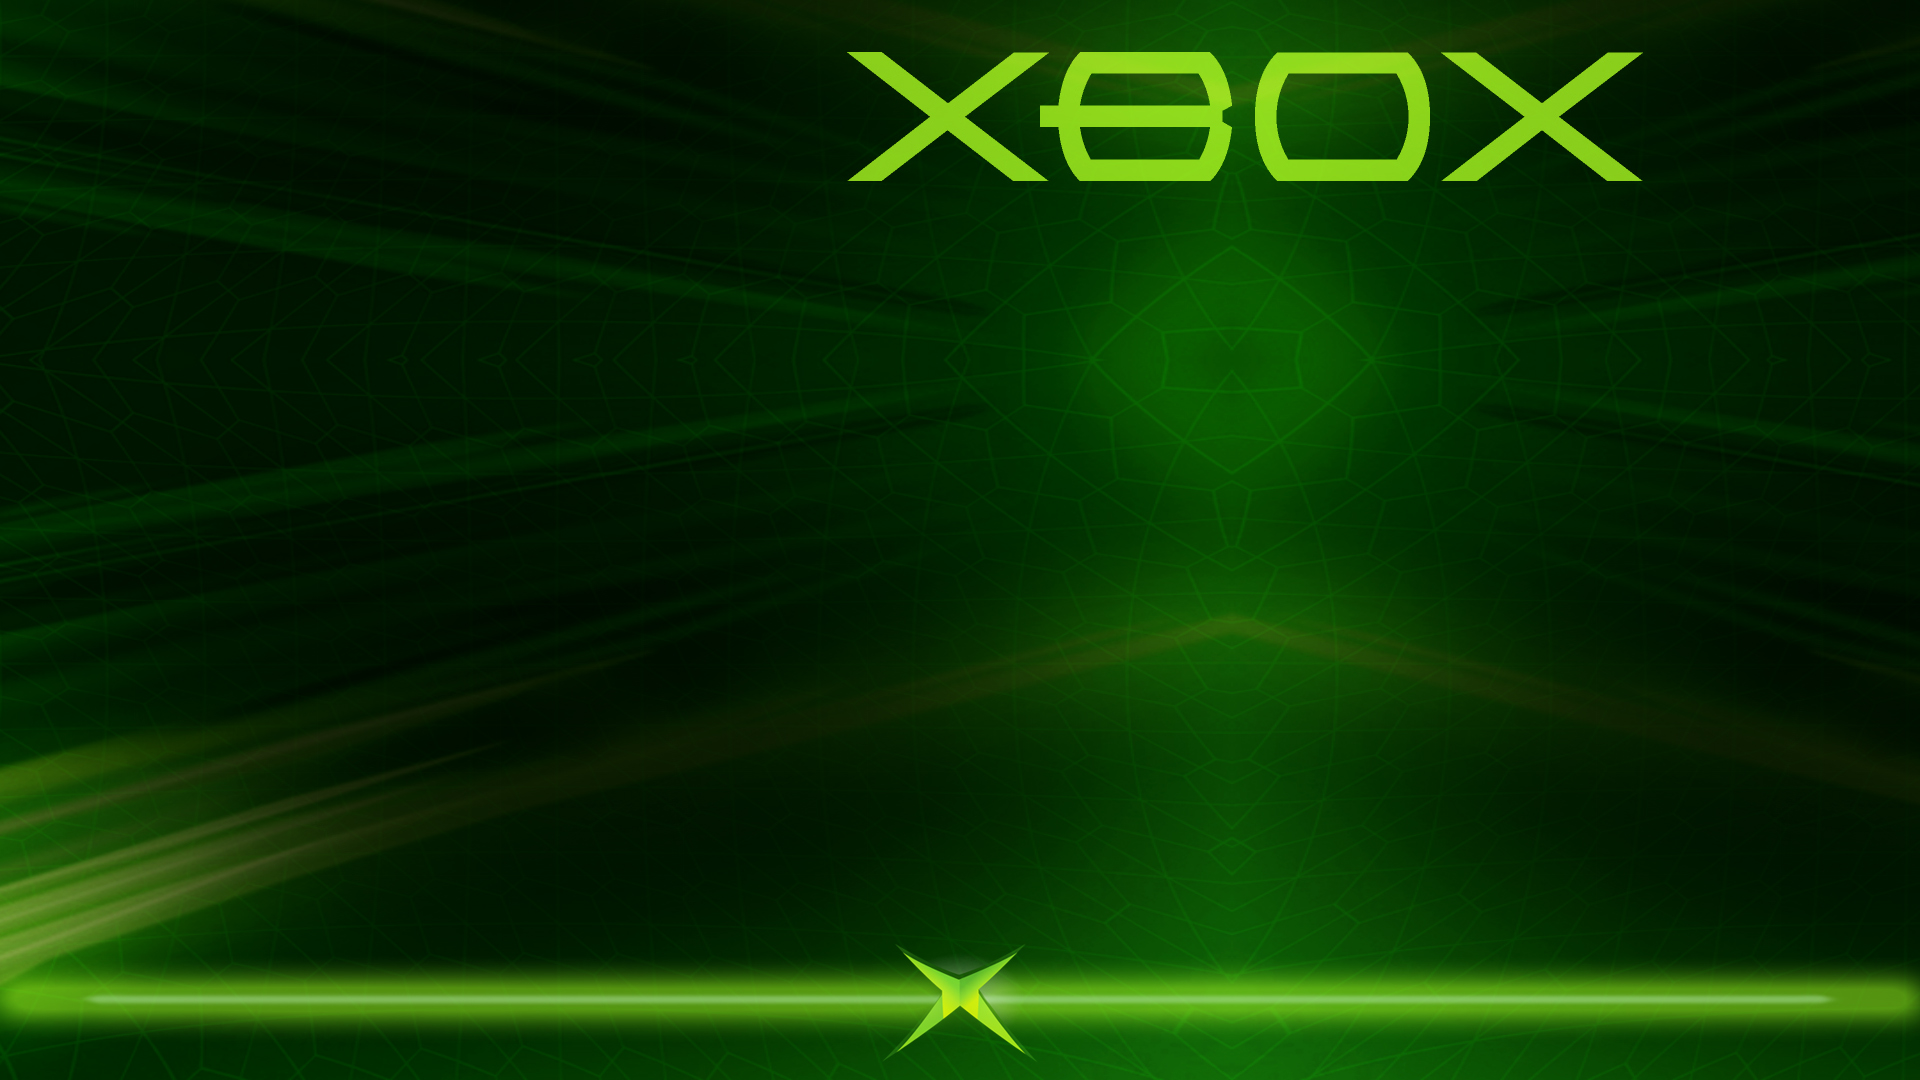 Xbox custom backgrounds: Xbox cung cấp nhiều chủ đề và hình nền tùy chỉnh để bạn thỏa sức tạo nên cái nhìn độc đáo cho hệ thống của mình. Tự do sáng tạo là rất quan trọng và với tính năng này, bạn chắc chắn sẽ có thể tạo nên điều đặc biệt cho mình.